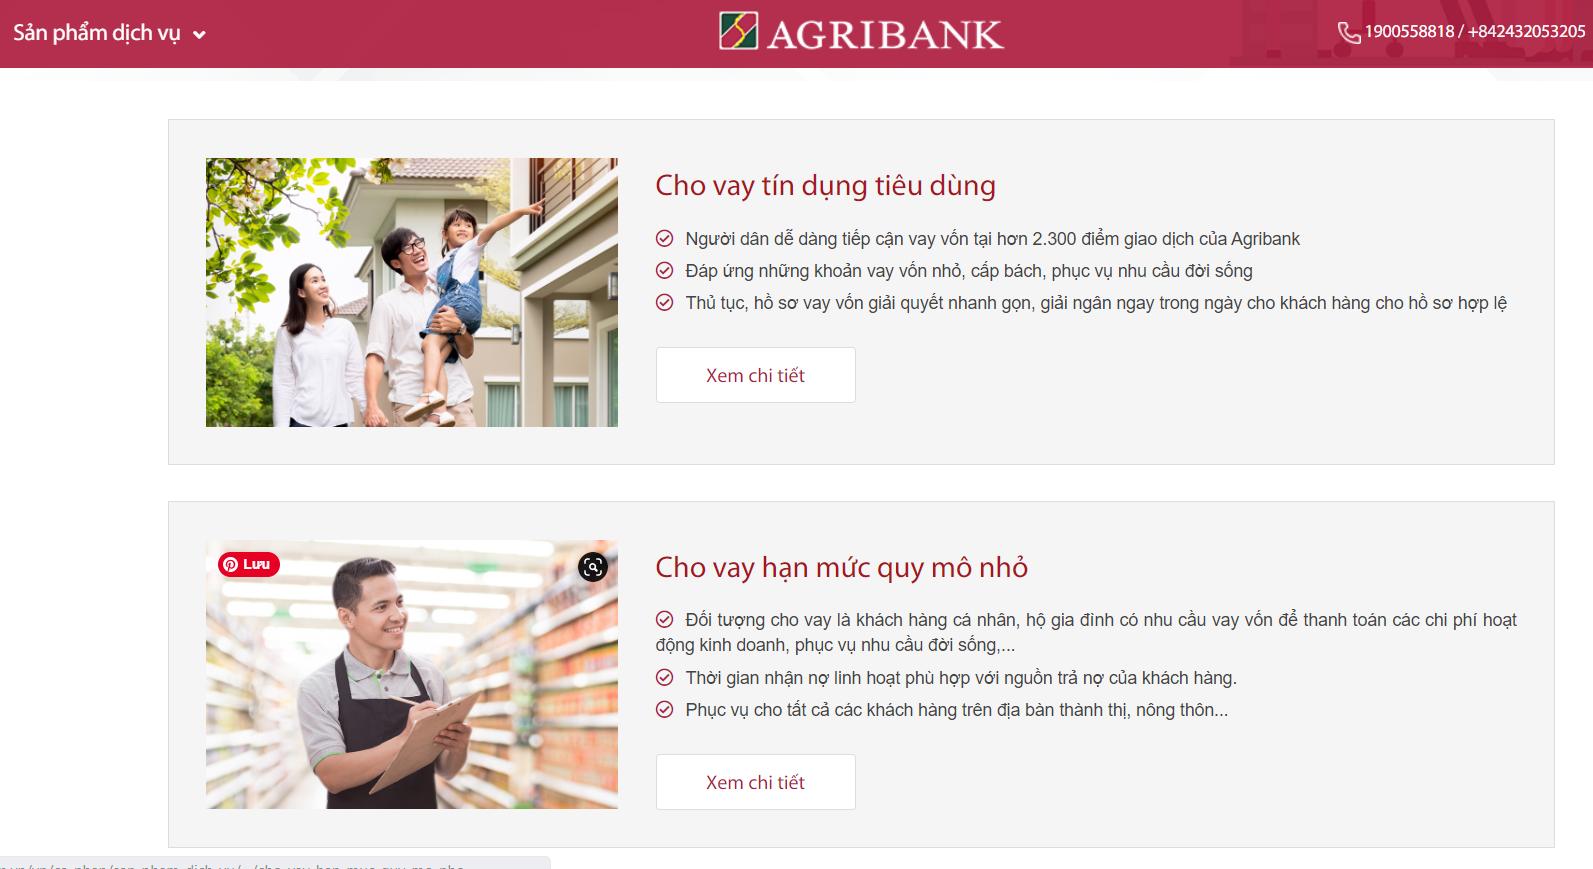 Khoản vay của ngân hàng Agribank dành cho khách hàng cá nhân ưu đãi hấp dẫn